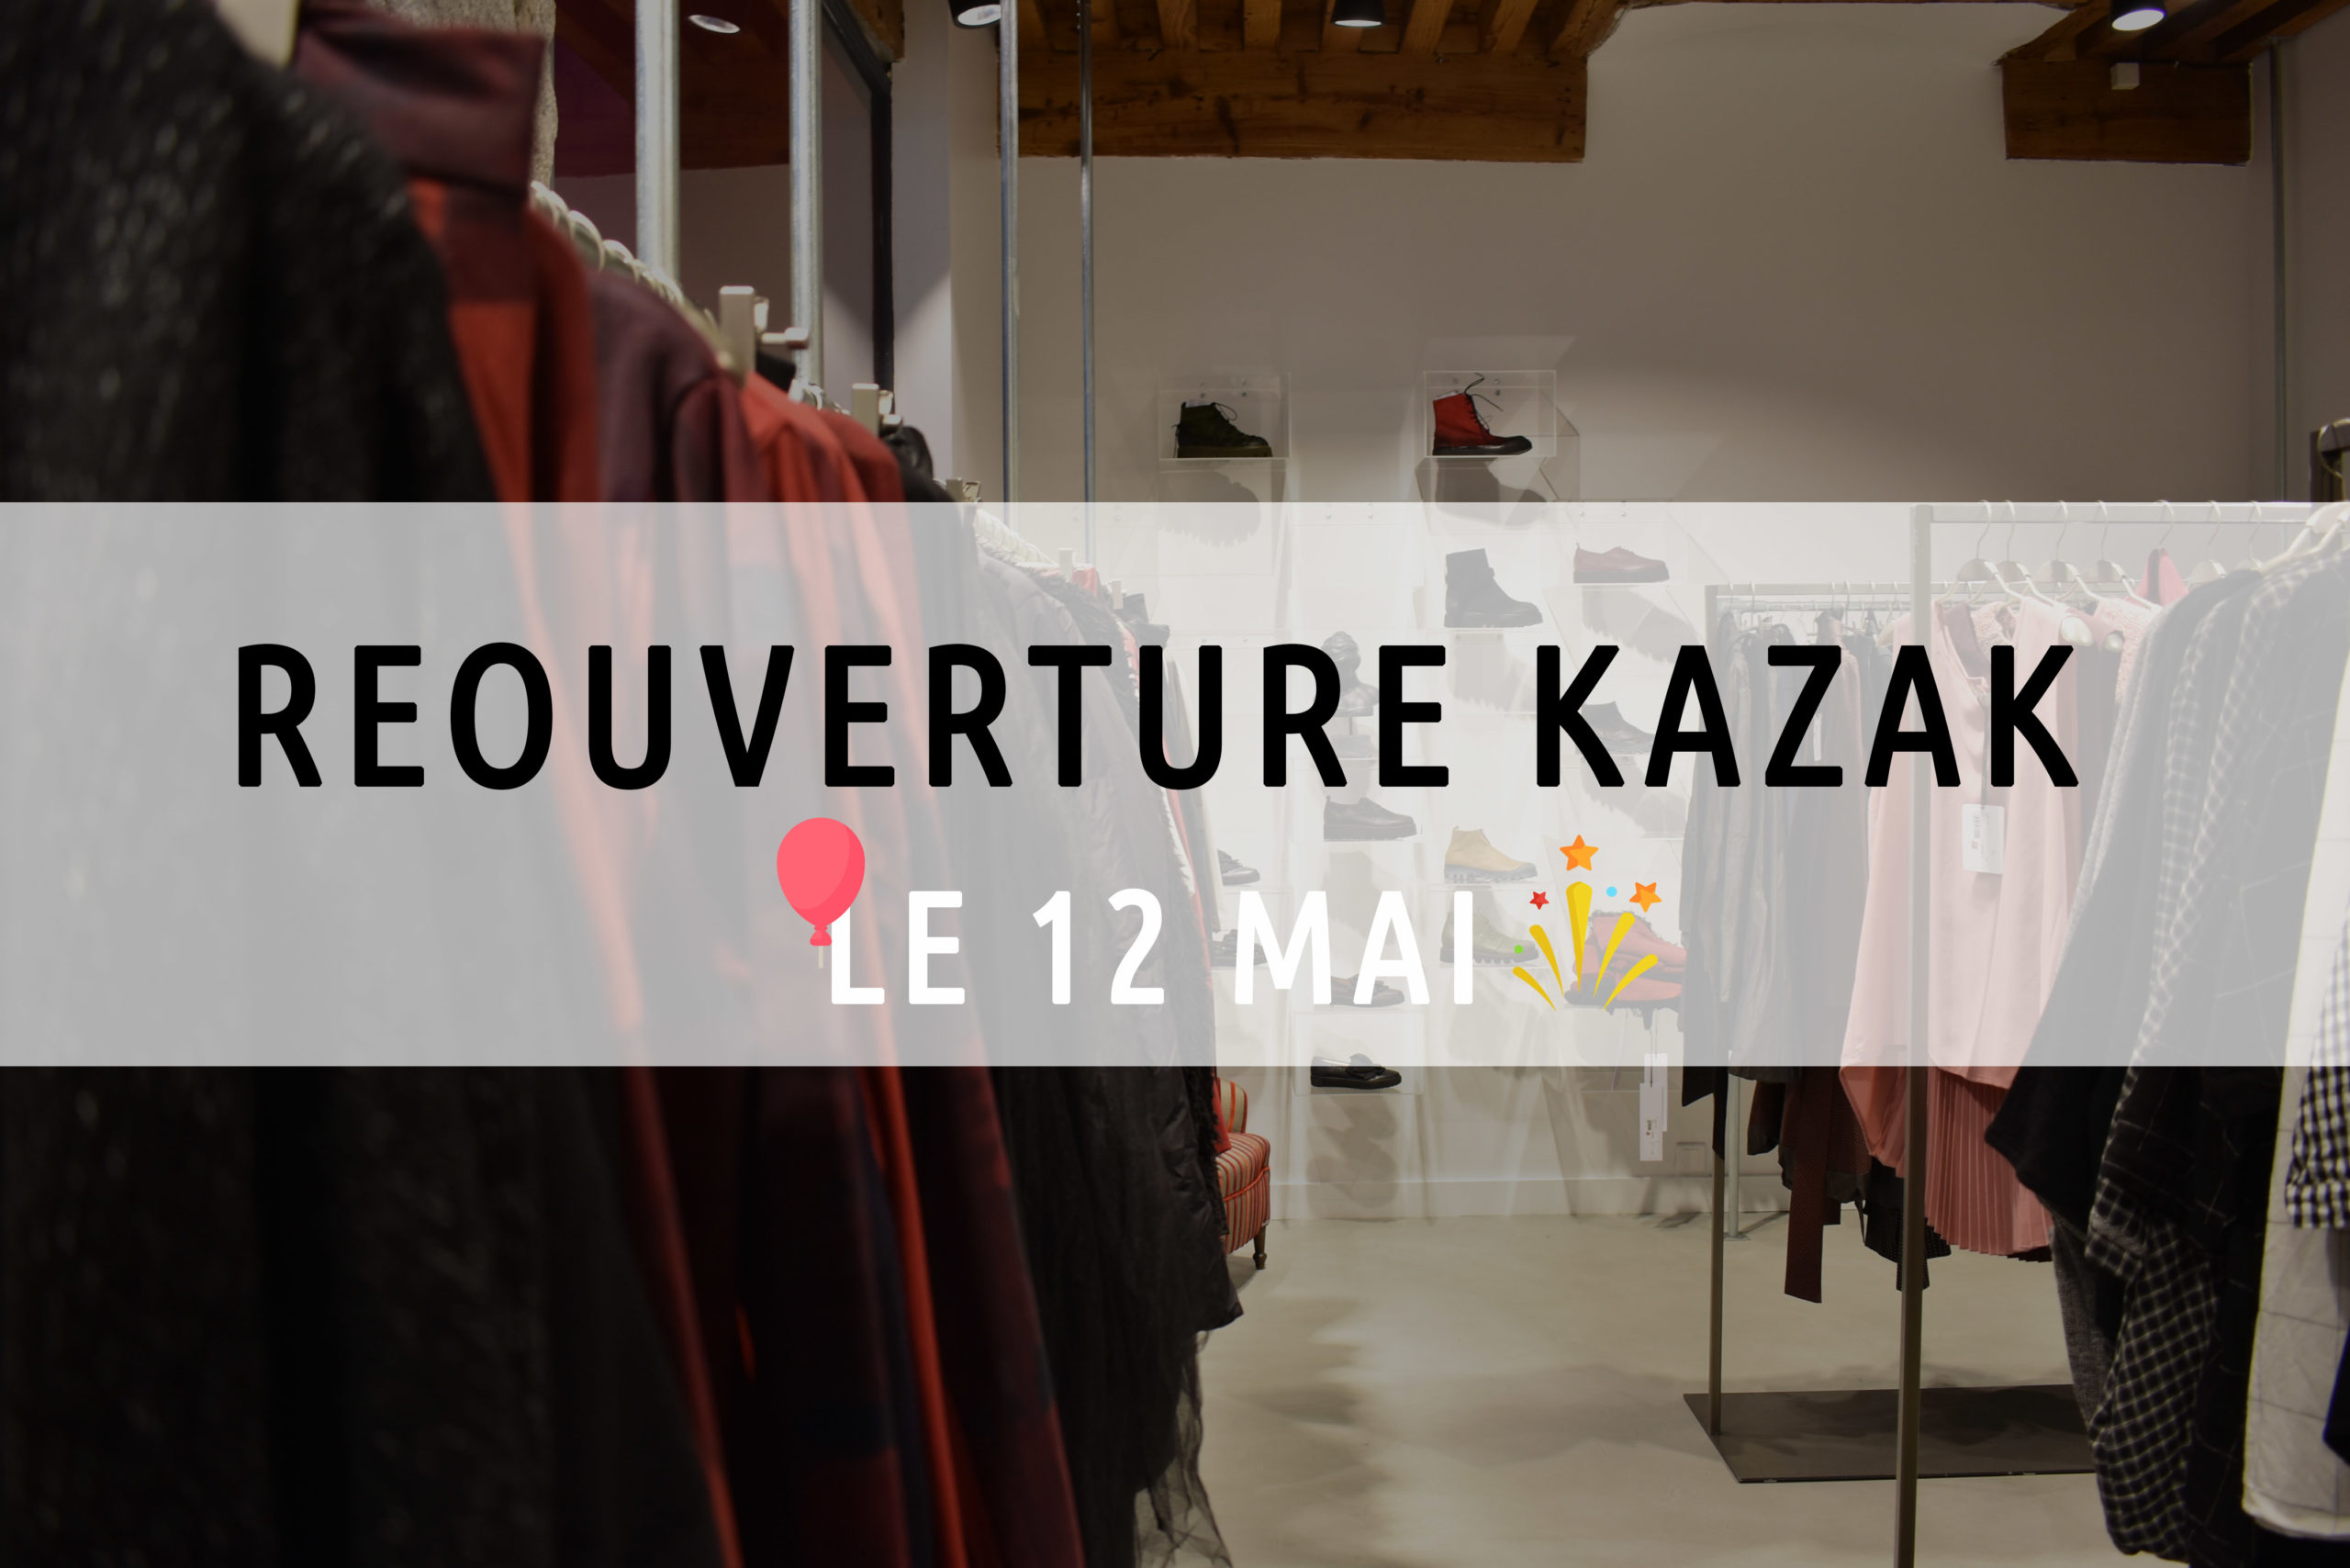 You are currently viewing Ré-ouverture Kazak le 12 Mai ! 🎉